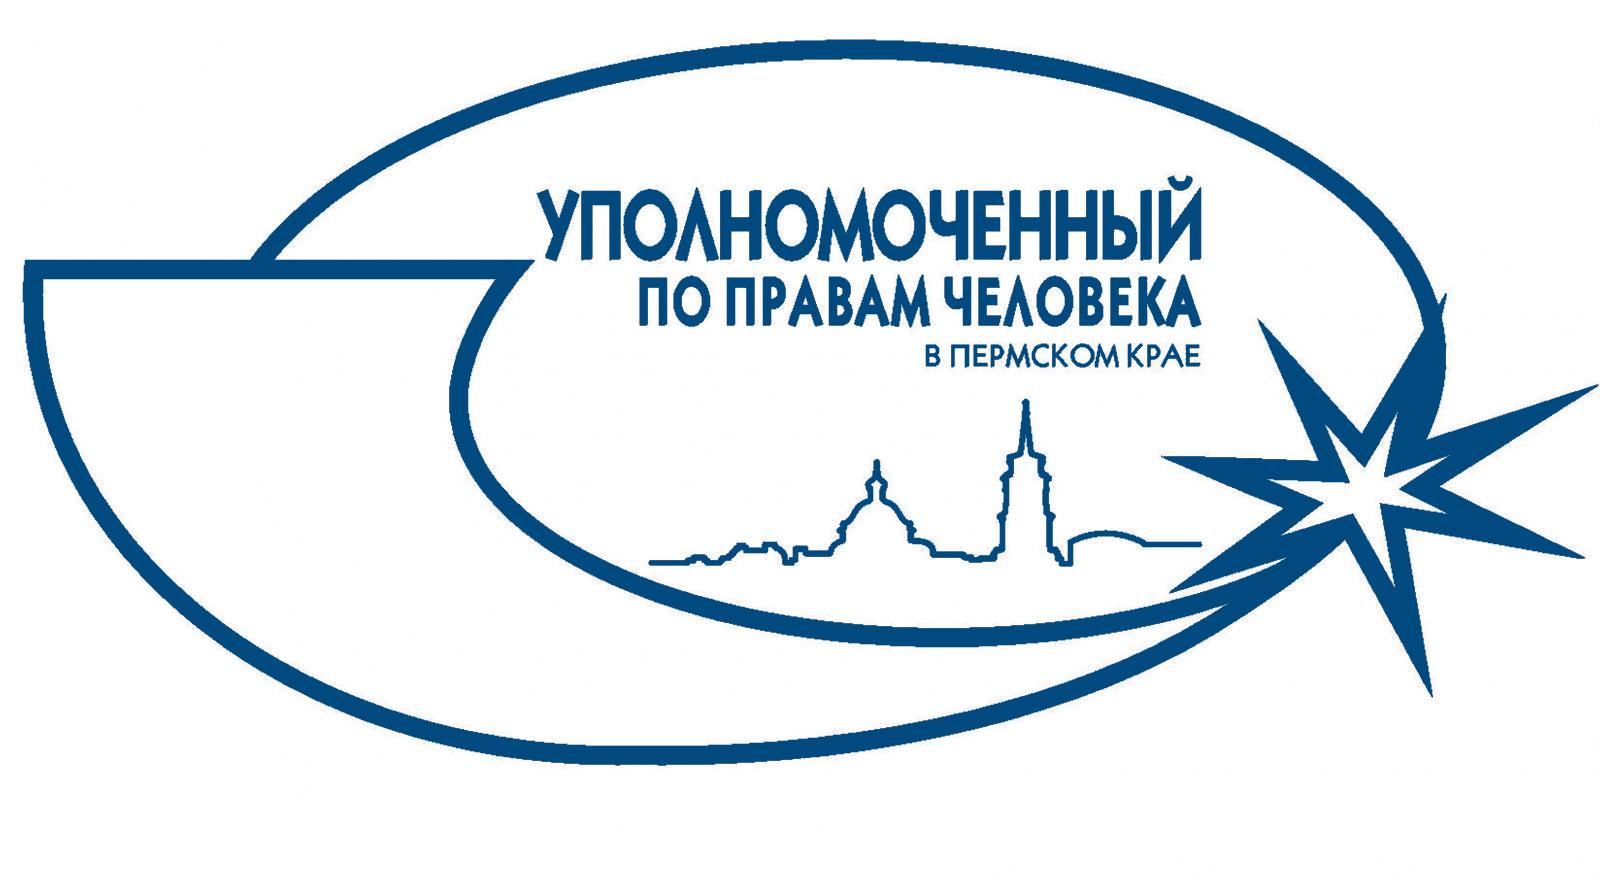 Уполномоченный по правам человека в Пермском крае приглашает принять участие в конкурсе на лучшую научную работу и эссе